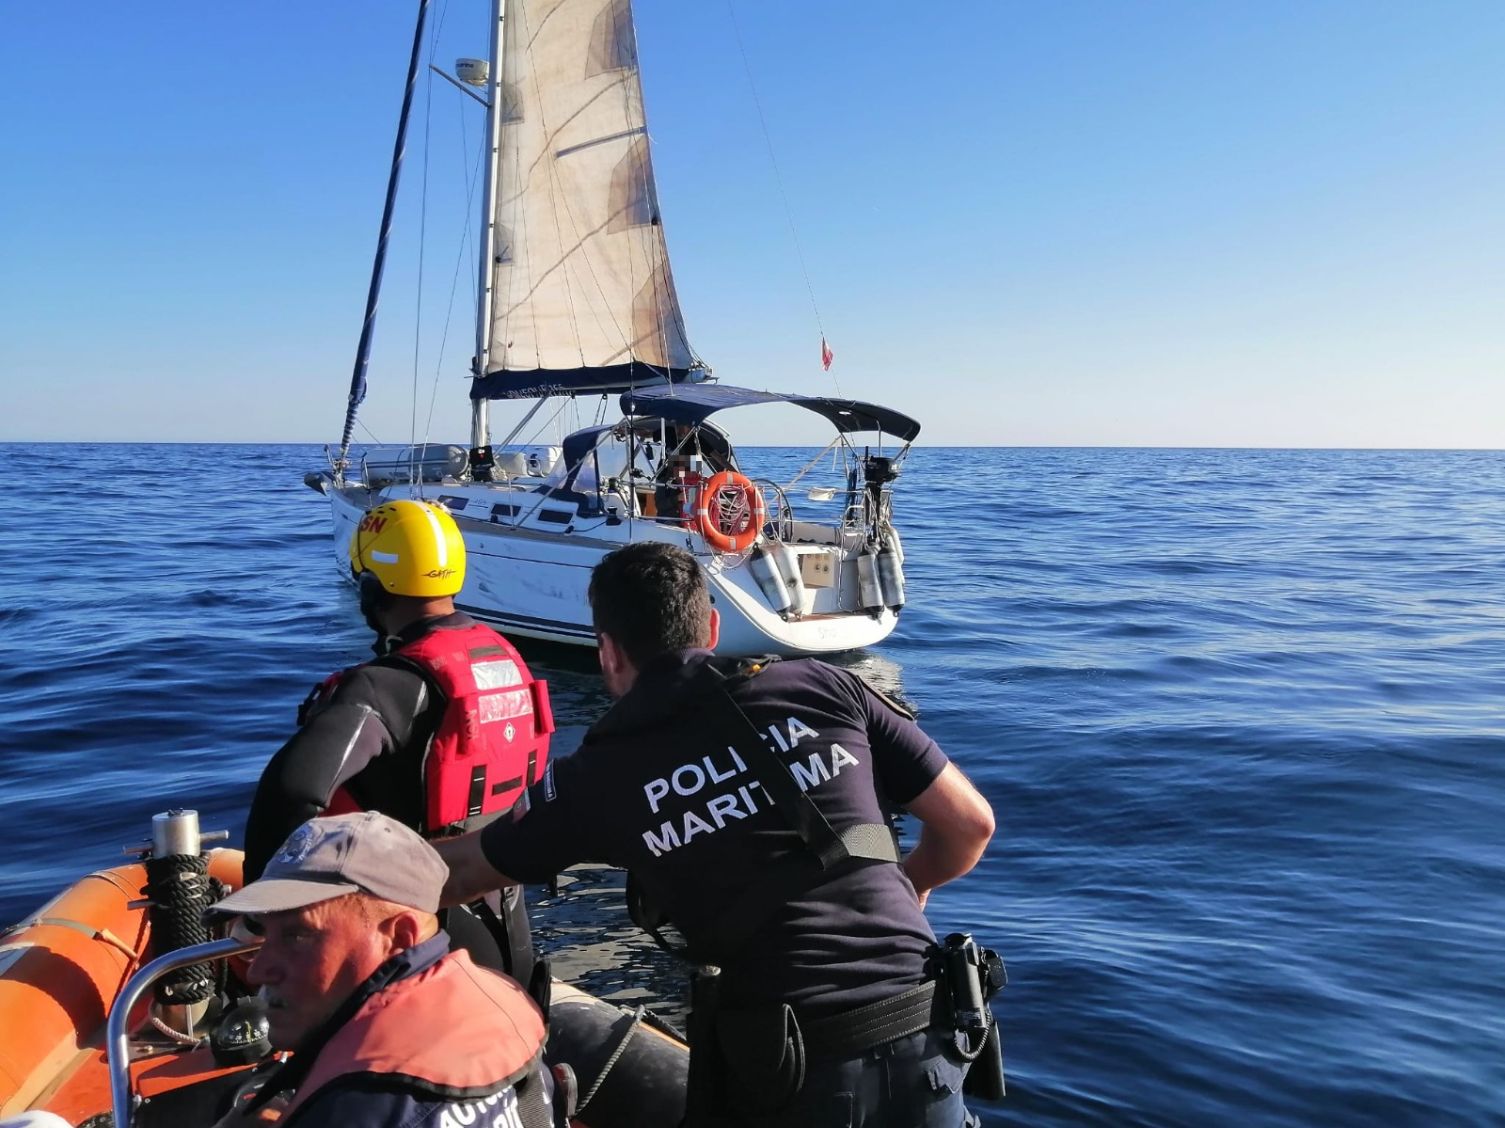 Autoridade Marítima Nacional auxilia três tripulantes de veleiro ao largo de Olhão